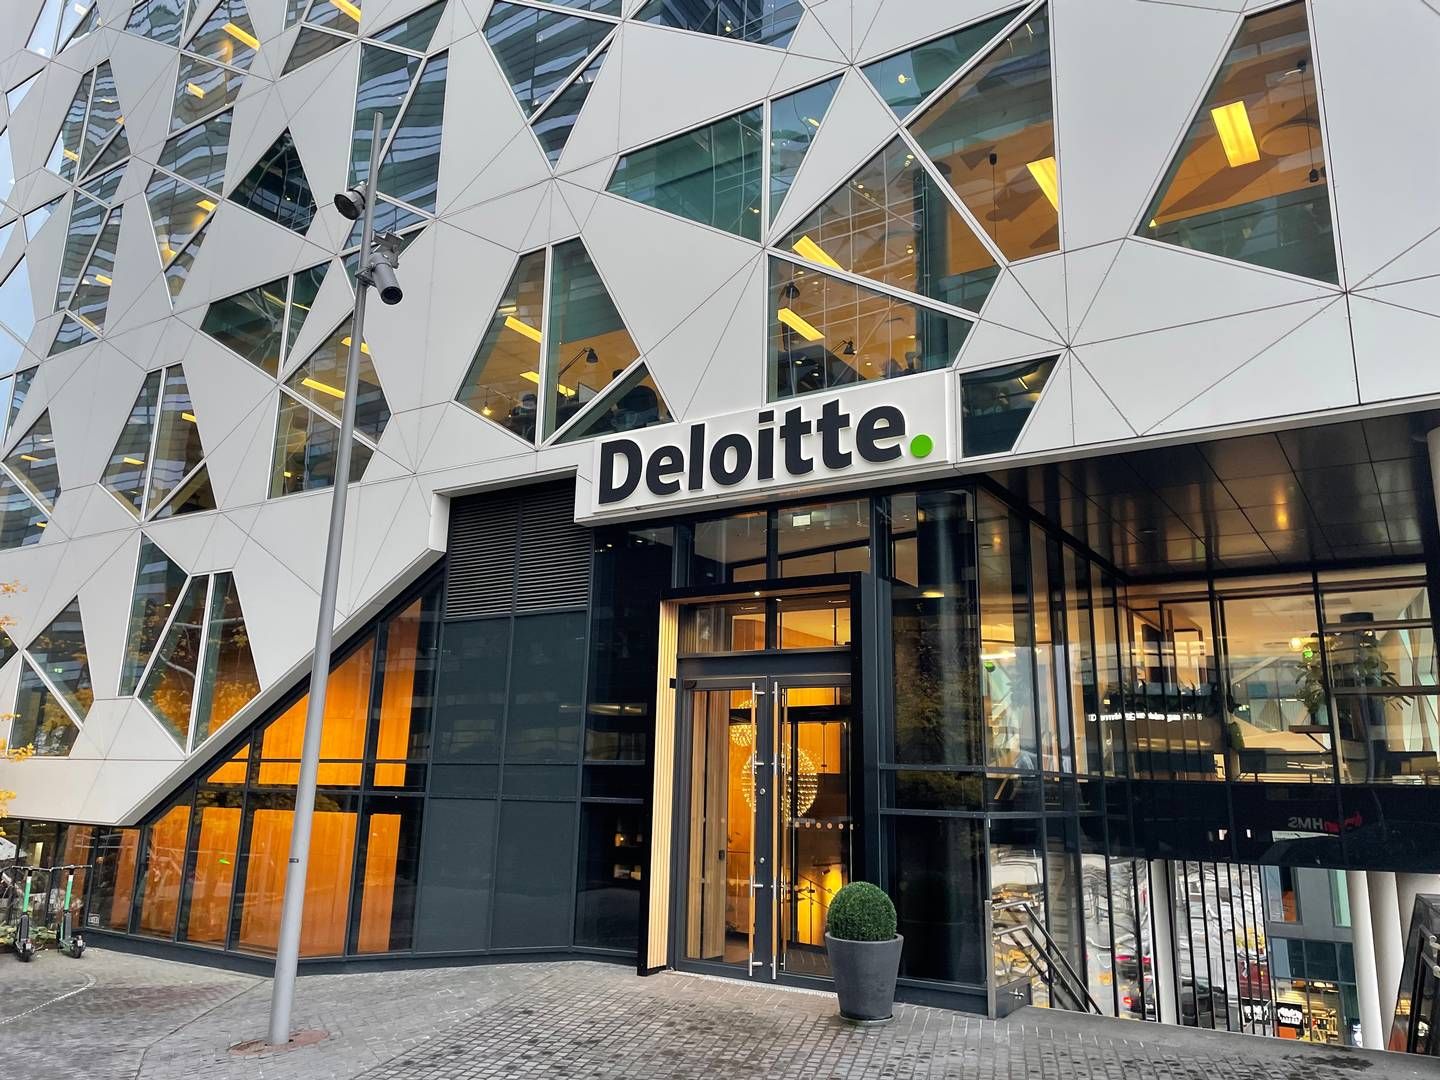 TILDELT TO KONTRAKTER: Deloitte er også tildelt en kontrakt verdt tre millioner kroner. | Foto: Stian Olsen / AdvokatWatch